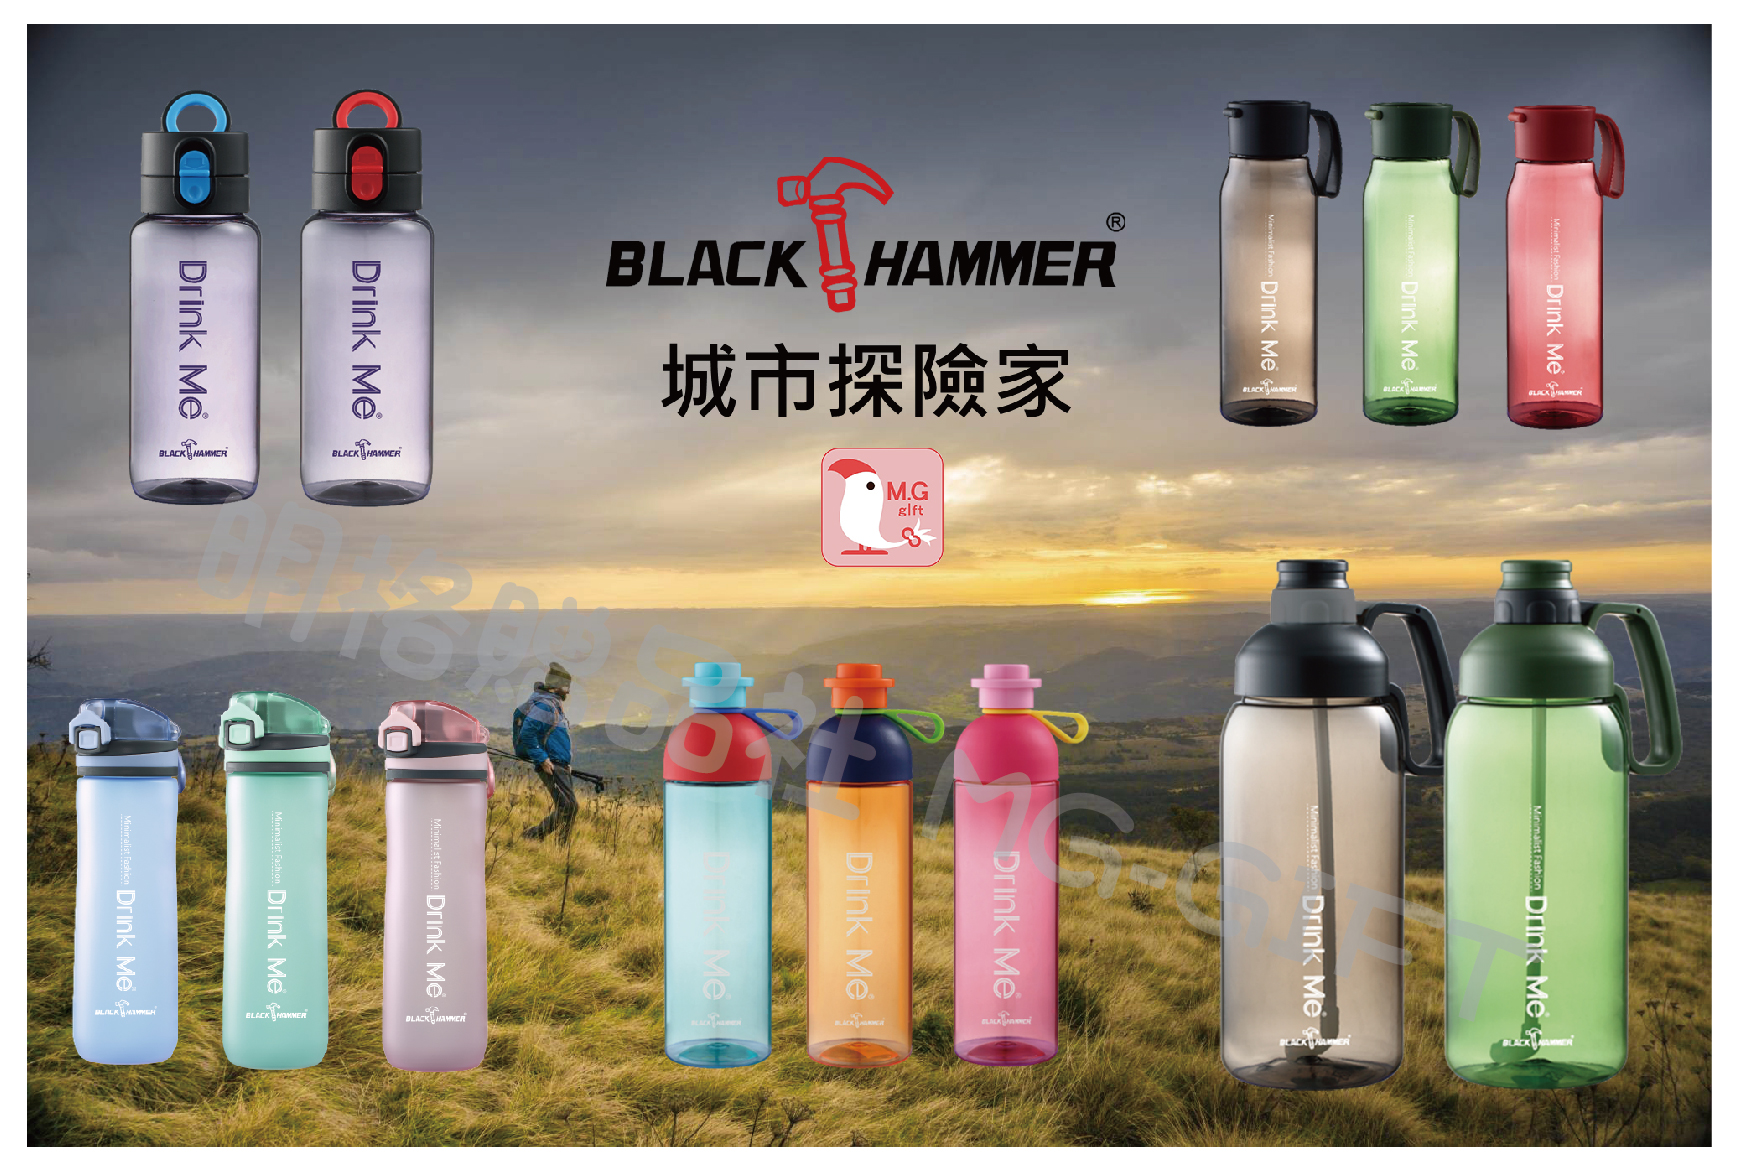 black hammer drink me 冷水瓶680ml 夏天必備 環保商品 健身 運動 戶外 義大利品牌 明格贈品社 禮品 贈品 員工禮品 太和工坊